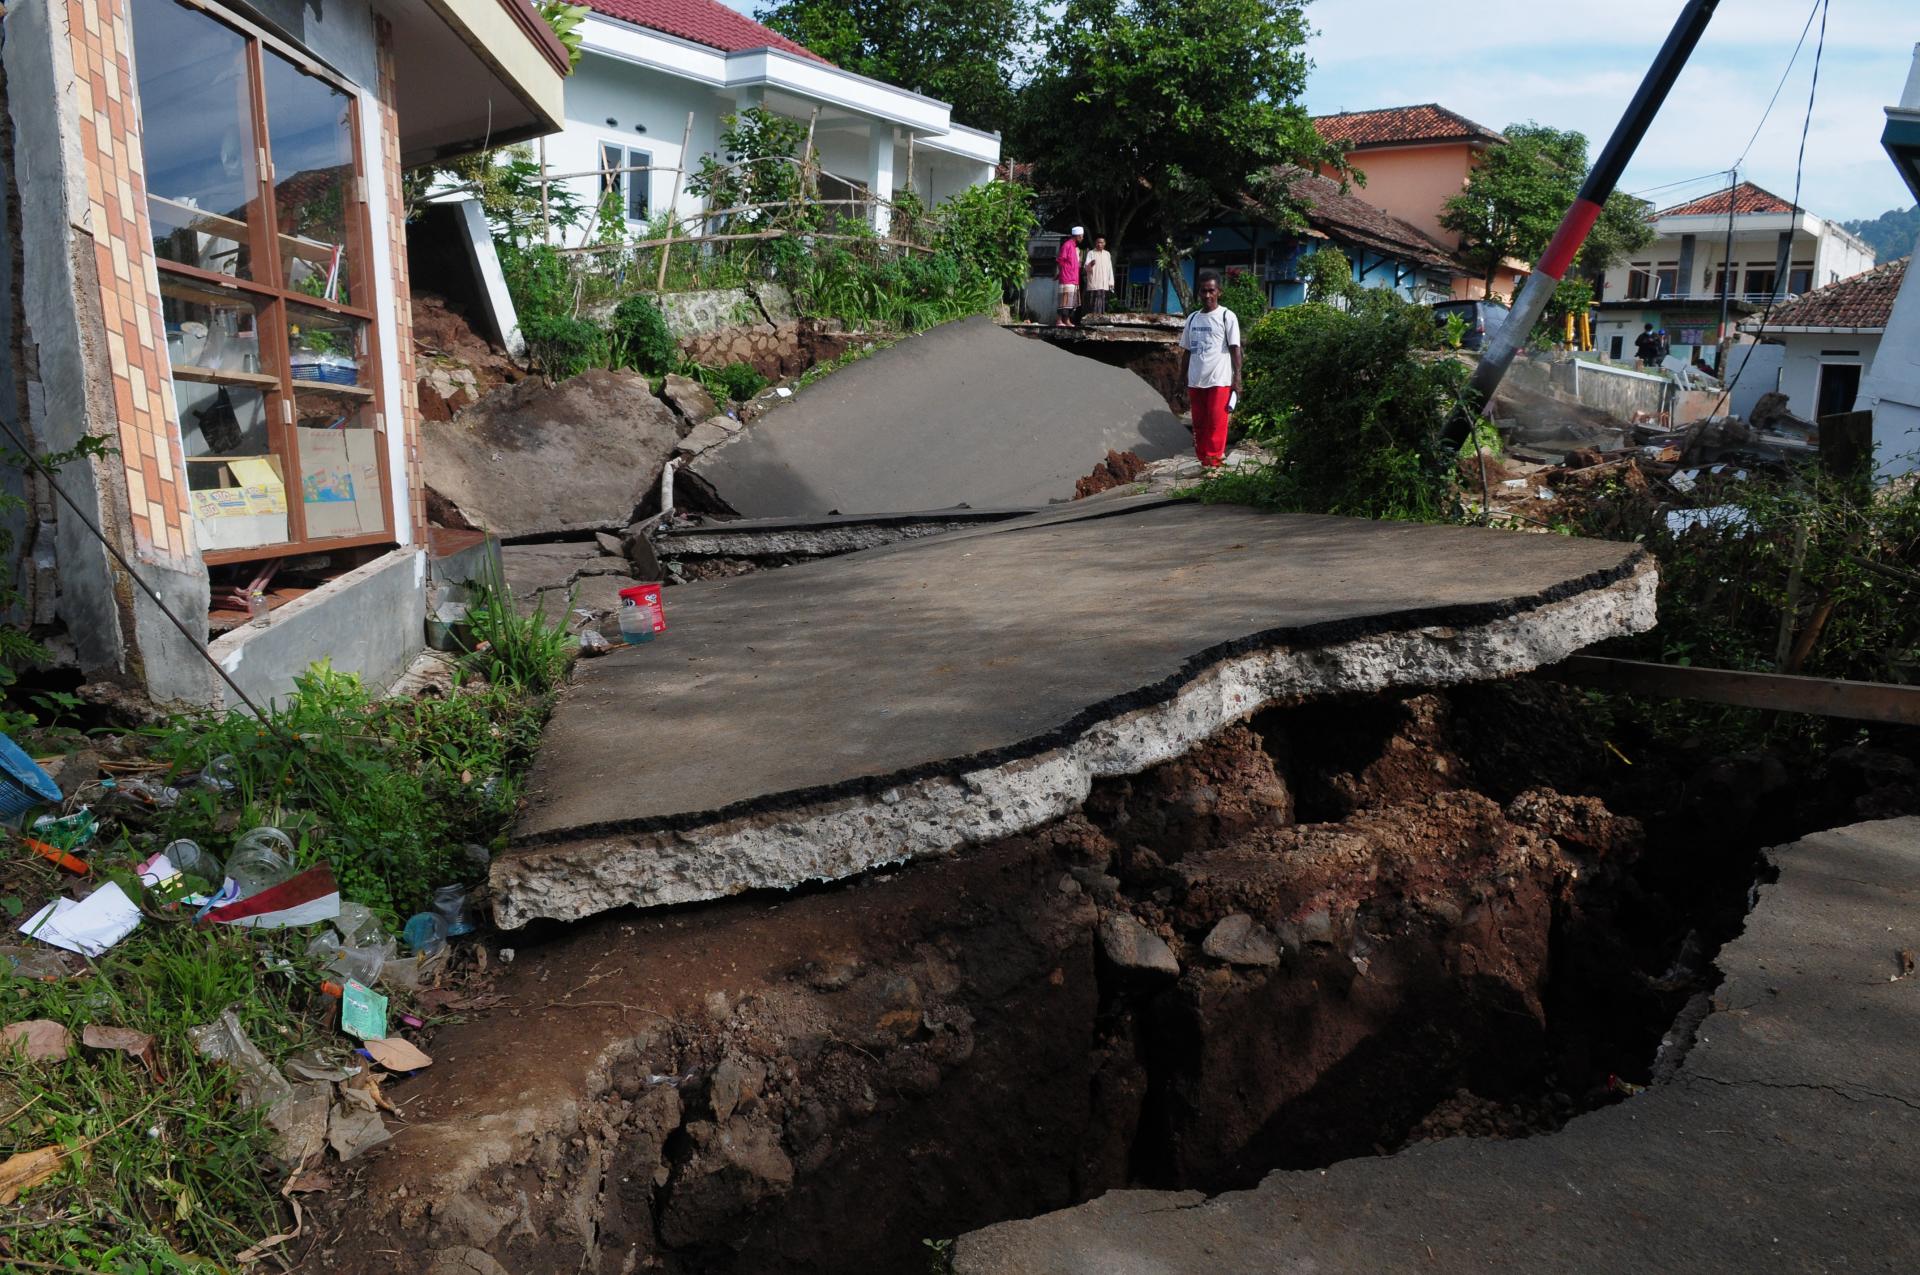 Sale a 271 morti il bilancio delle persone che hanno perso la vita nel terremoto in Indonesia